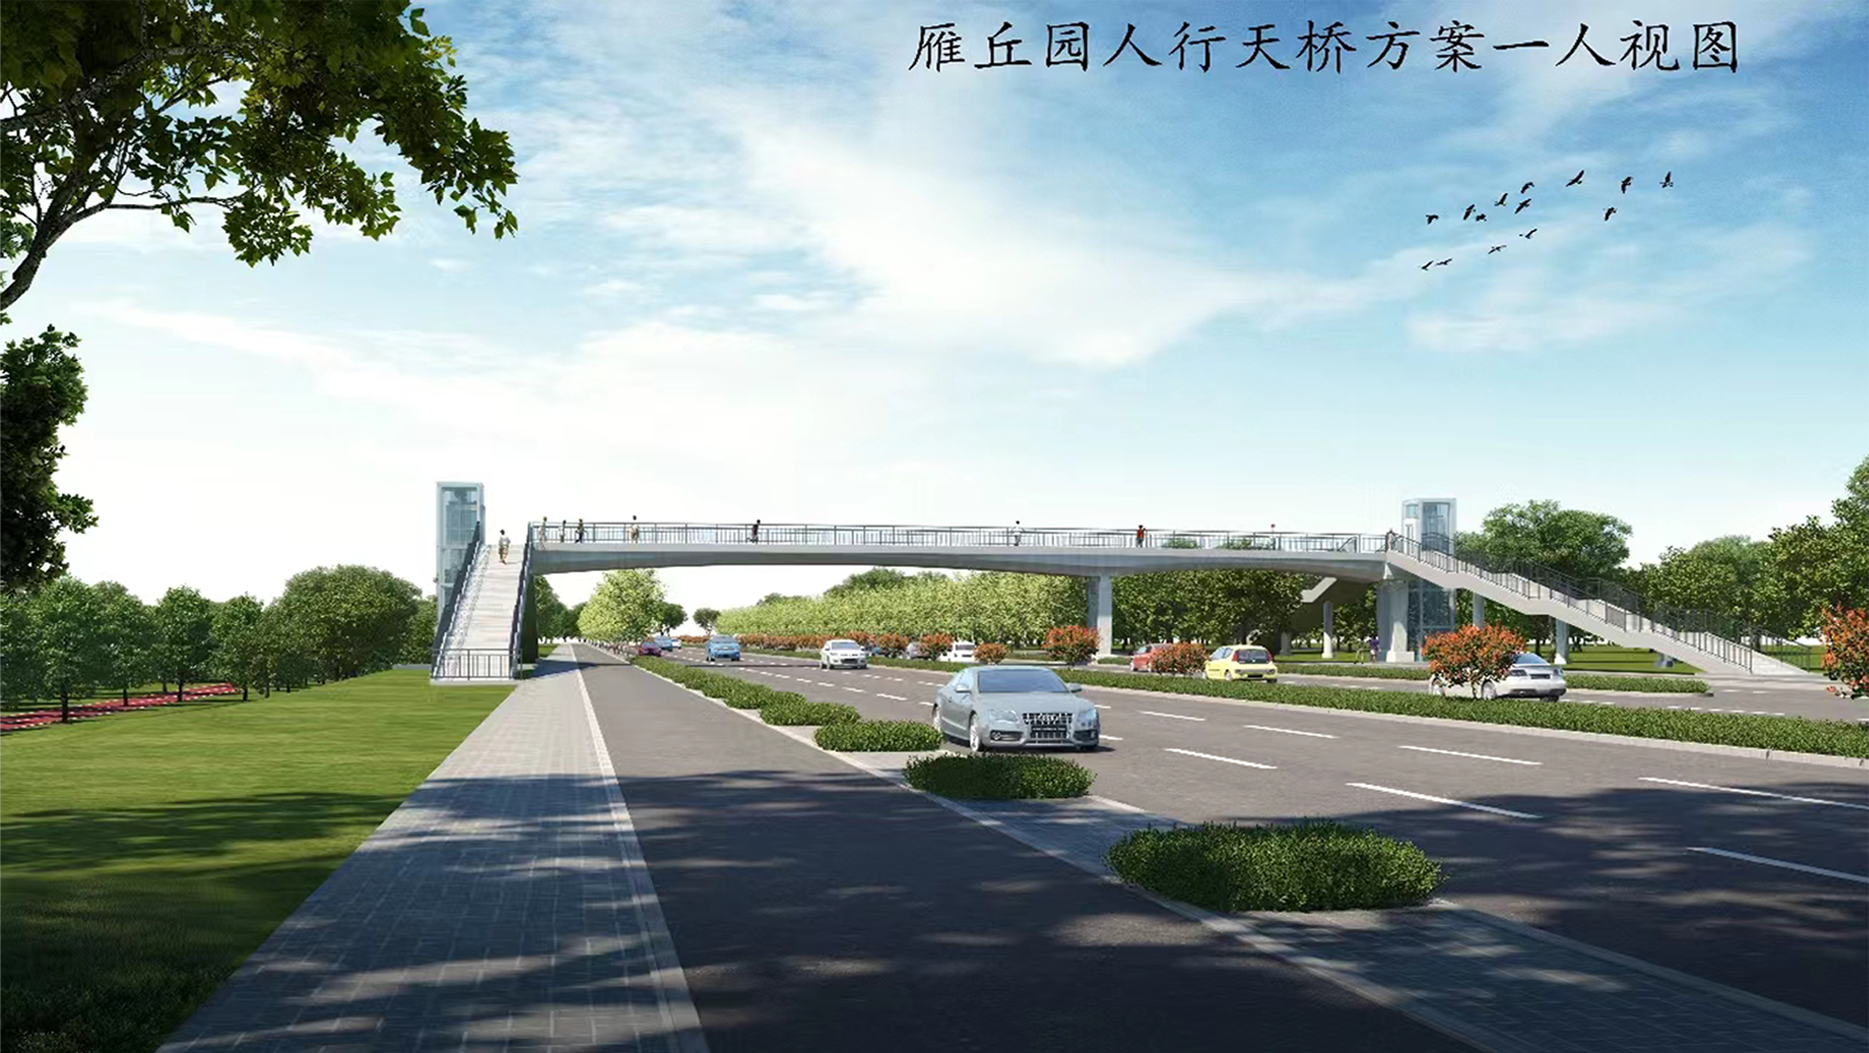 滨河东路将建一座人行天桥 建设工程设计方案公示